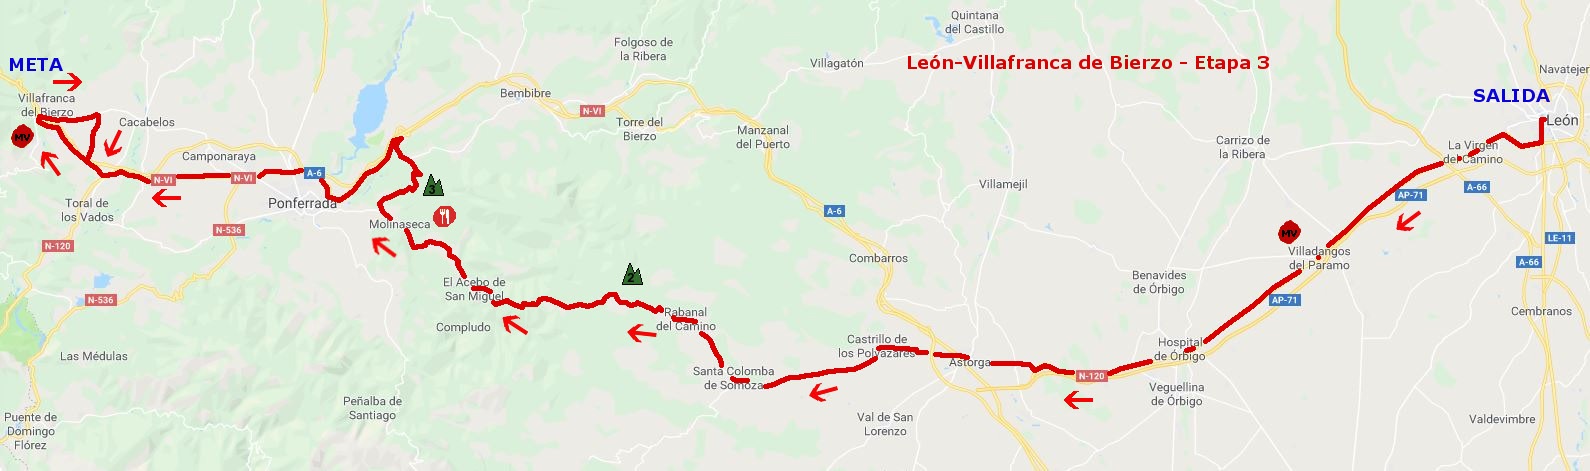 Streckenverlauf Vuelta a Castilla y Leon 2019 - Etappe 3